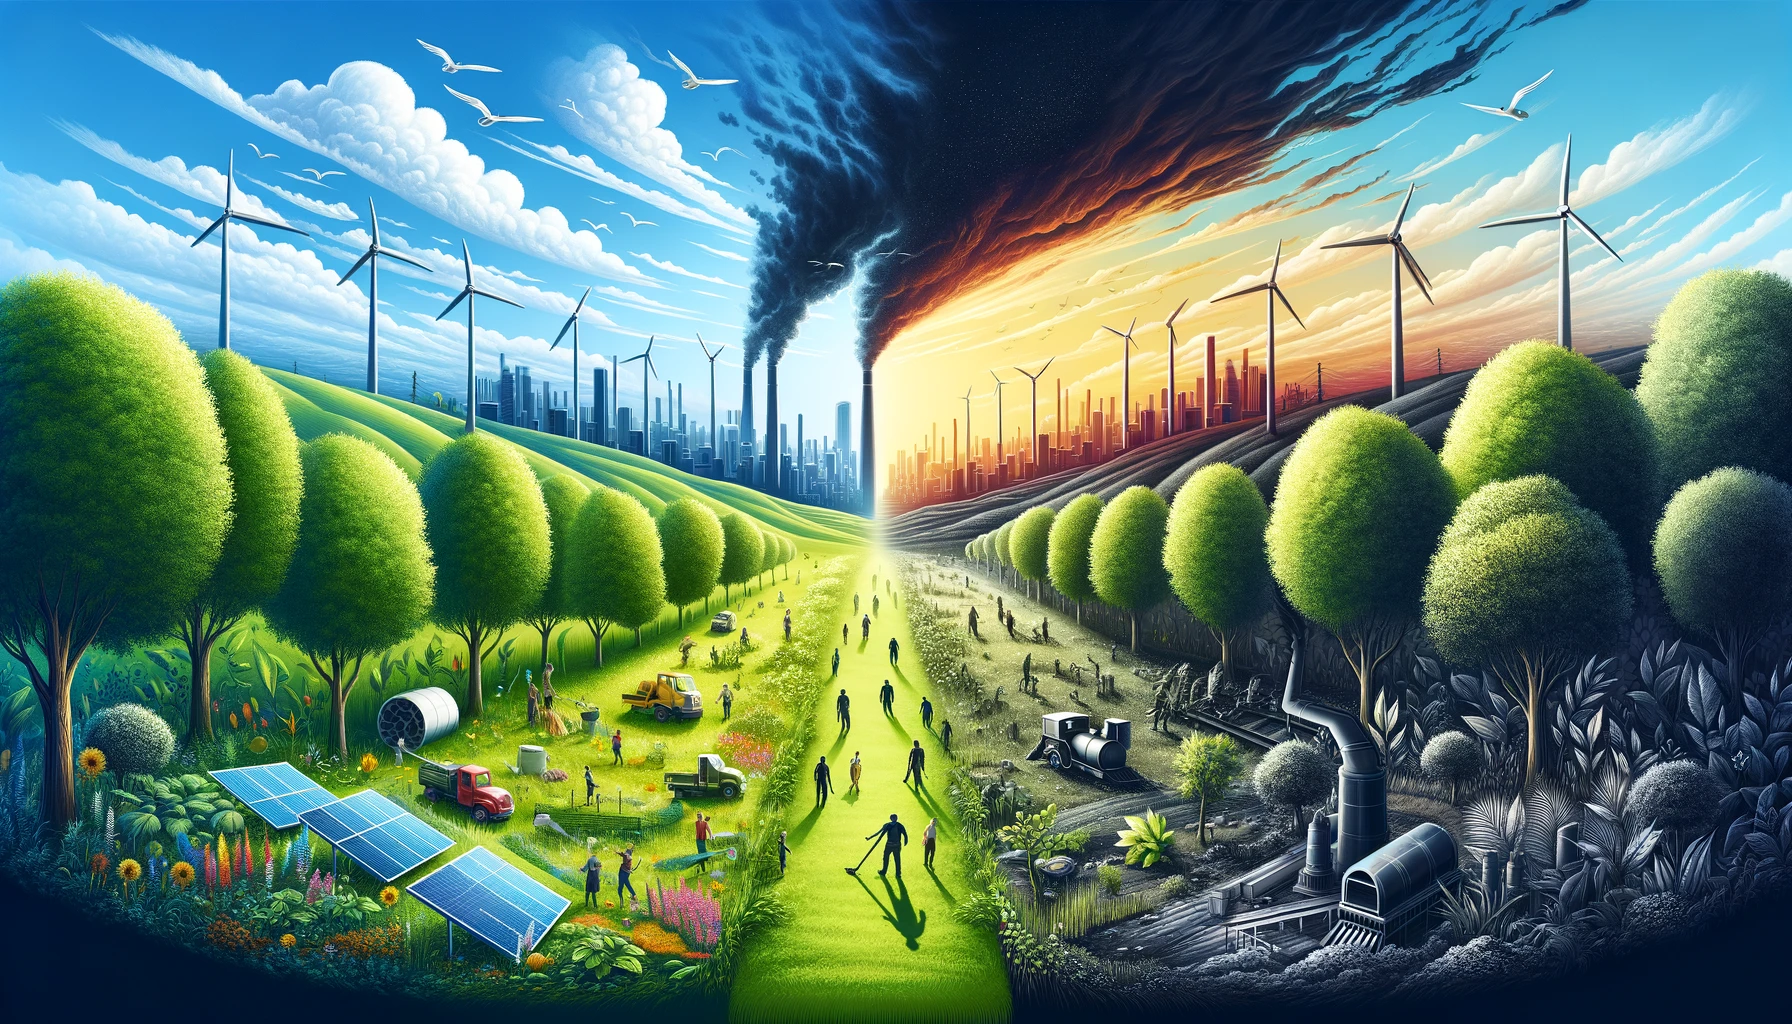 A descarbonização surge como um farol de esperança e ação contra as mudanças climáticas.